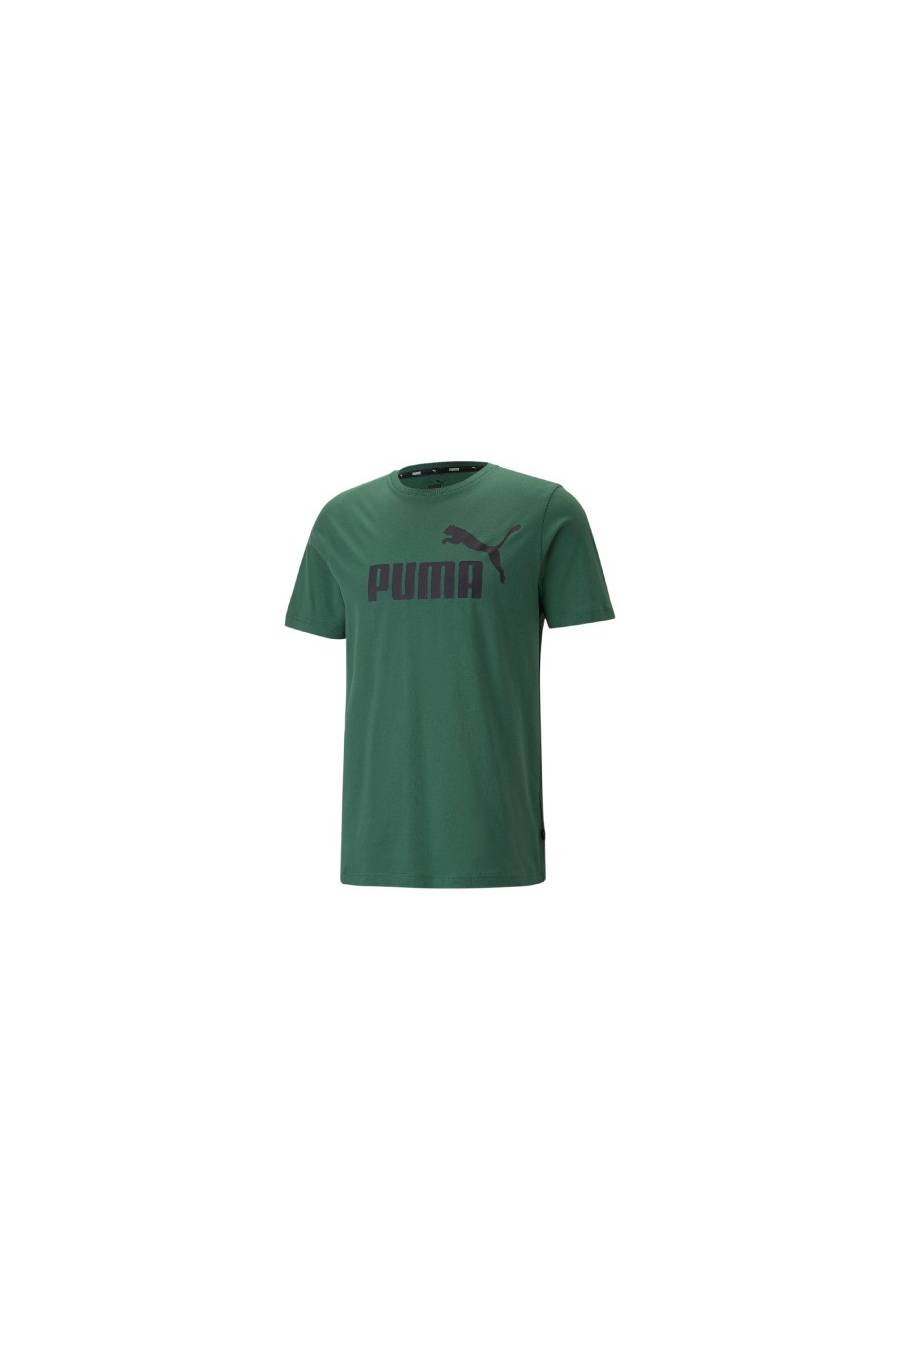 Camiseta Puma Esentials Logo 586667-46